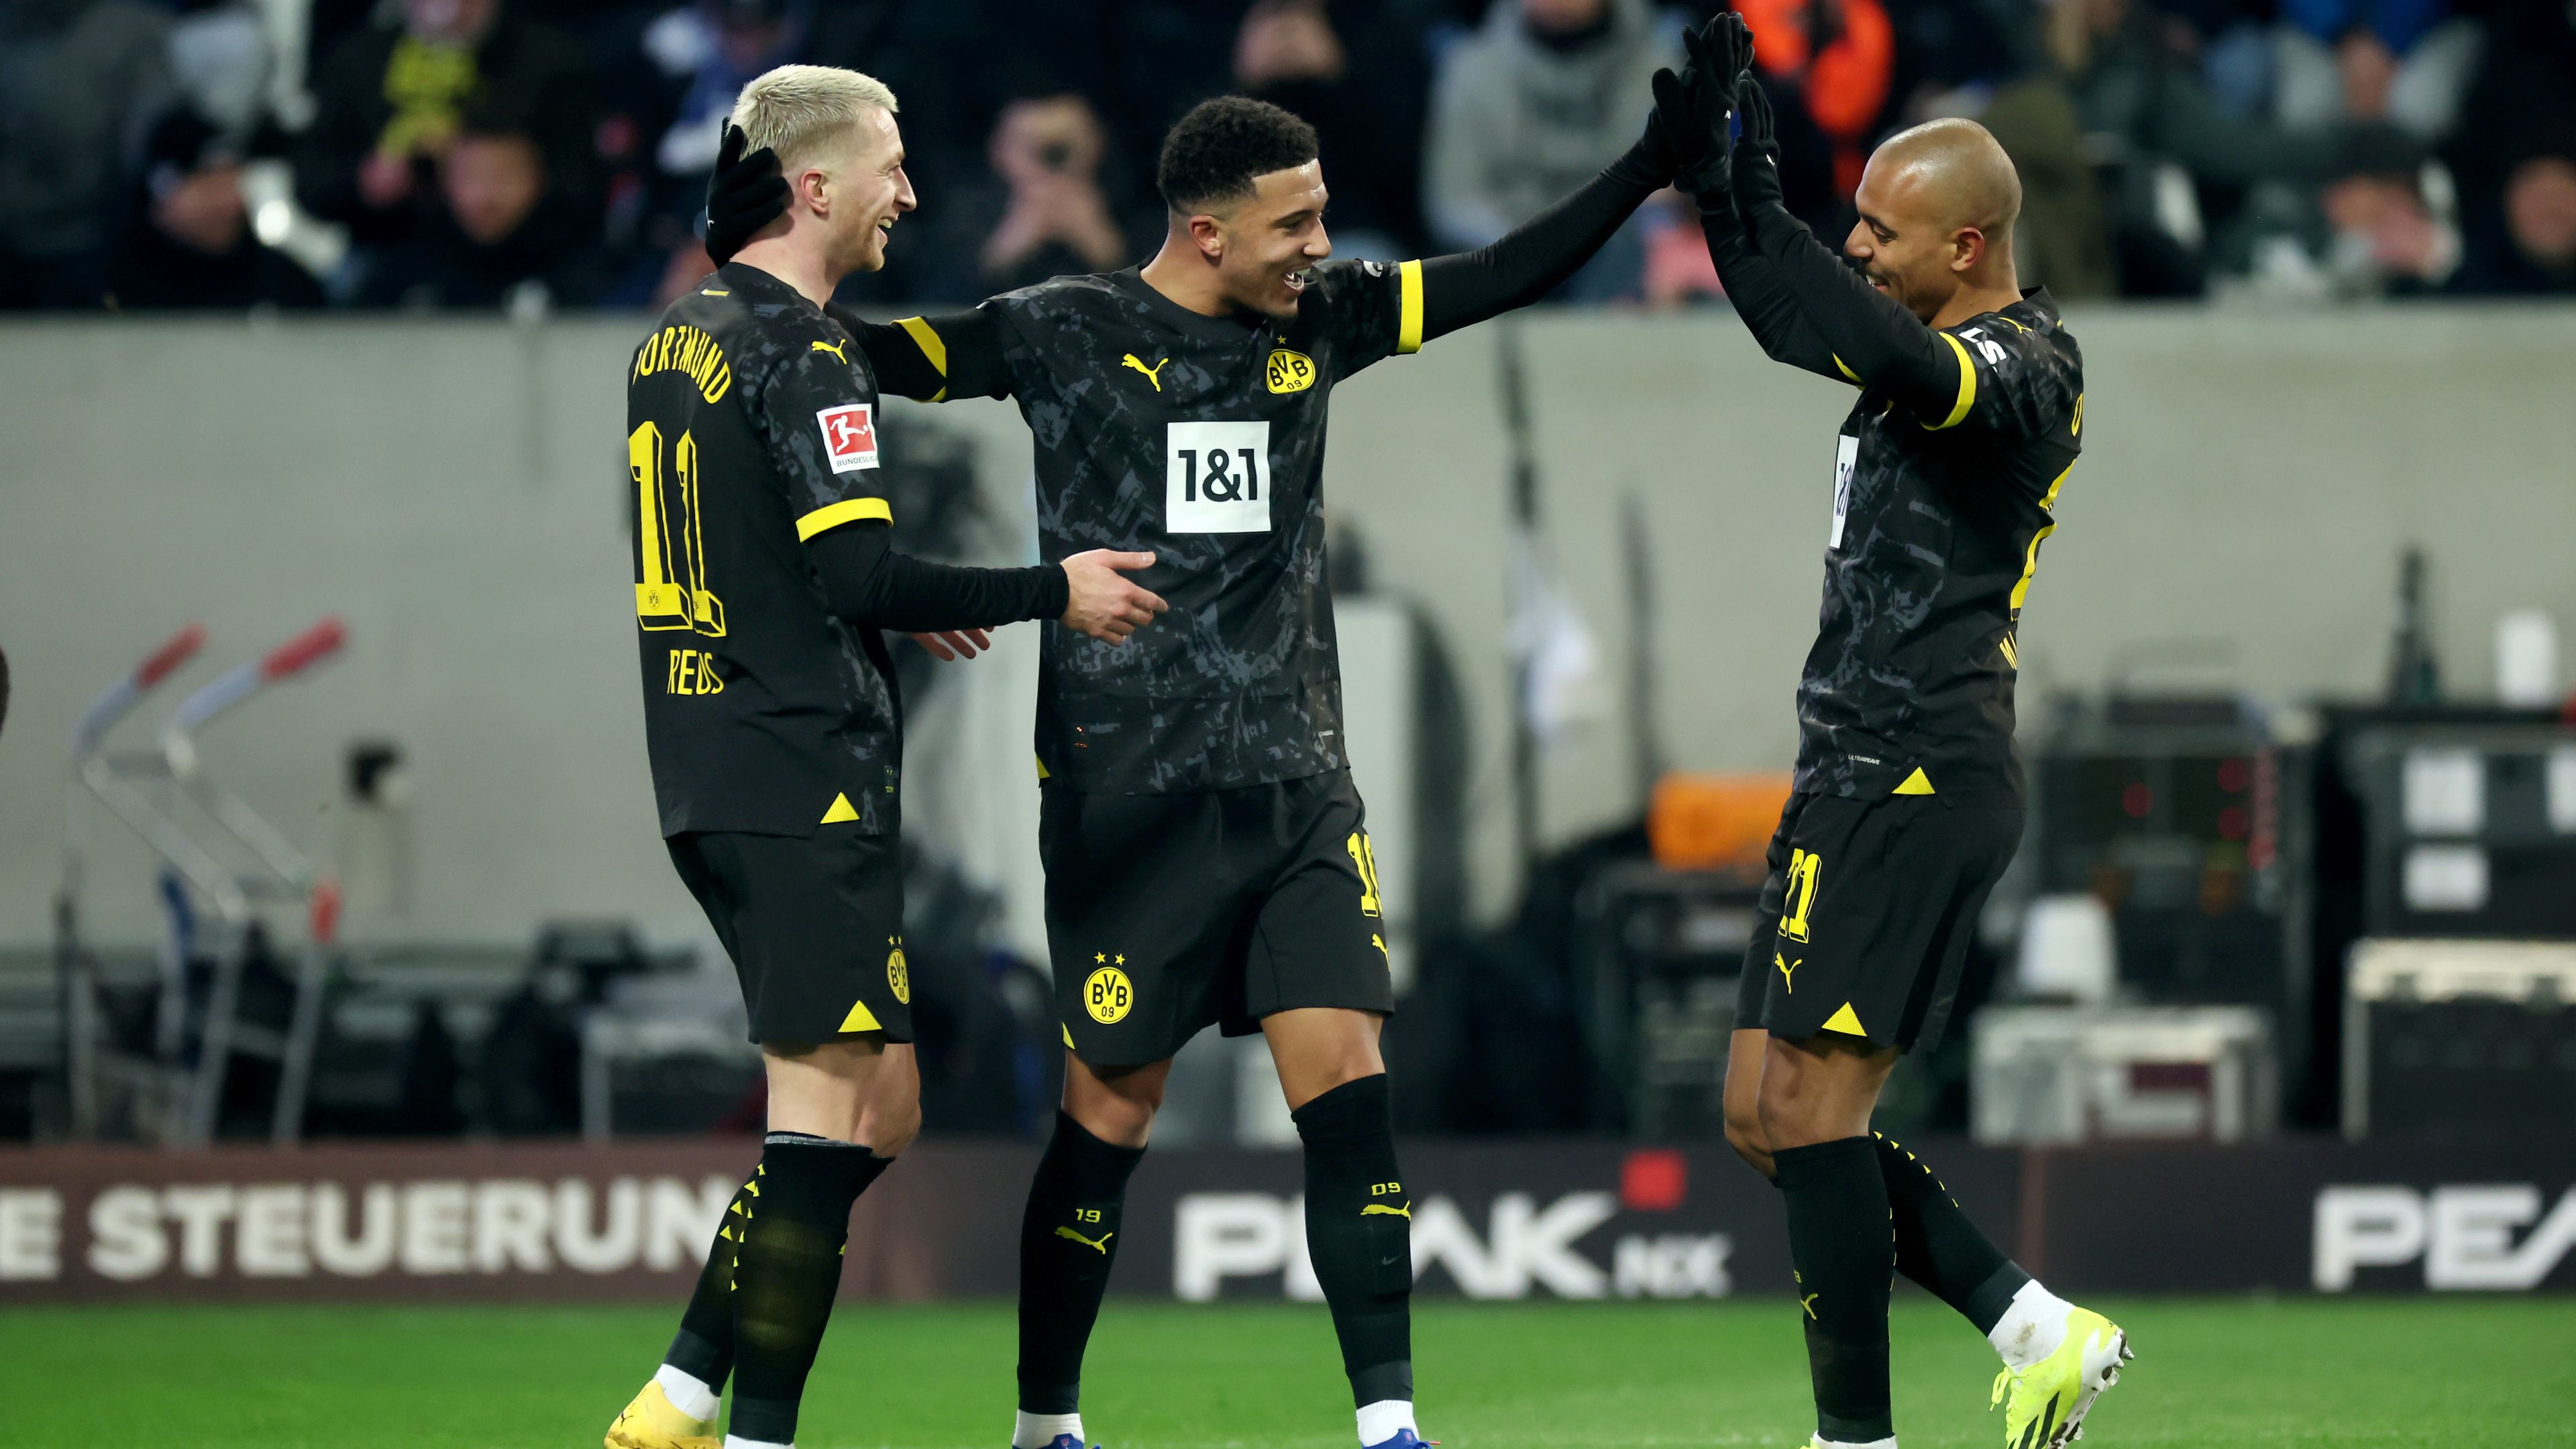 Ijedtség a lelátón; Sancho gólpasszal tért vissza a Dortmundba